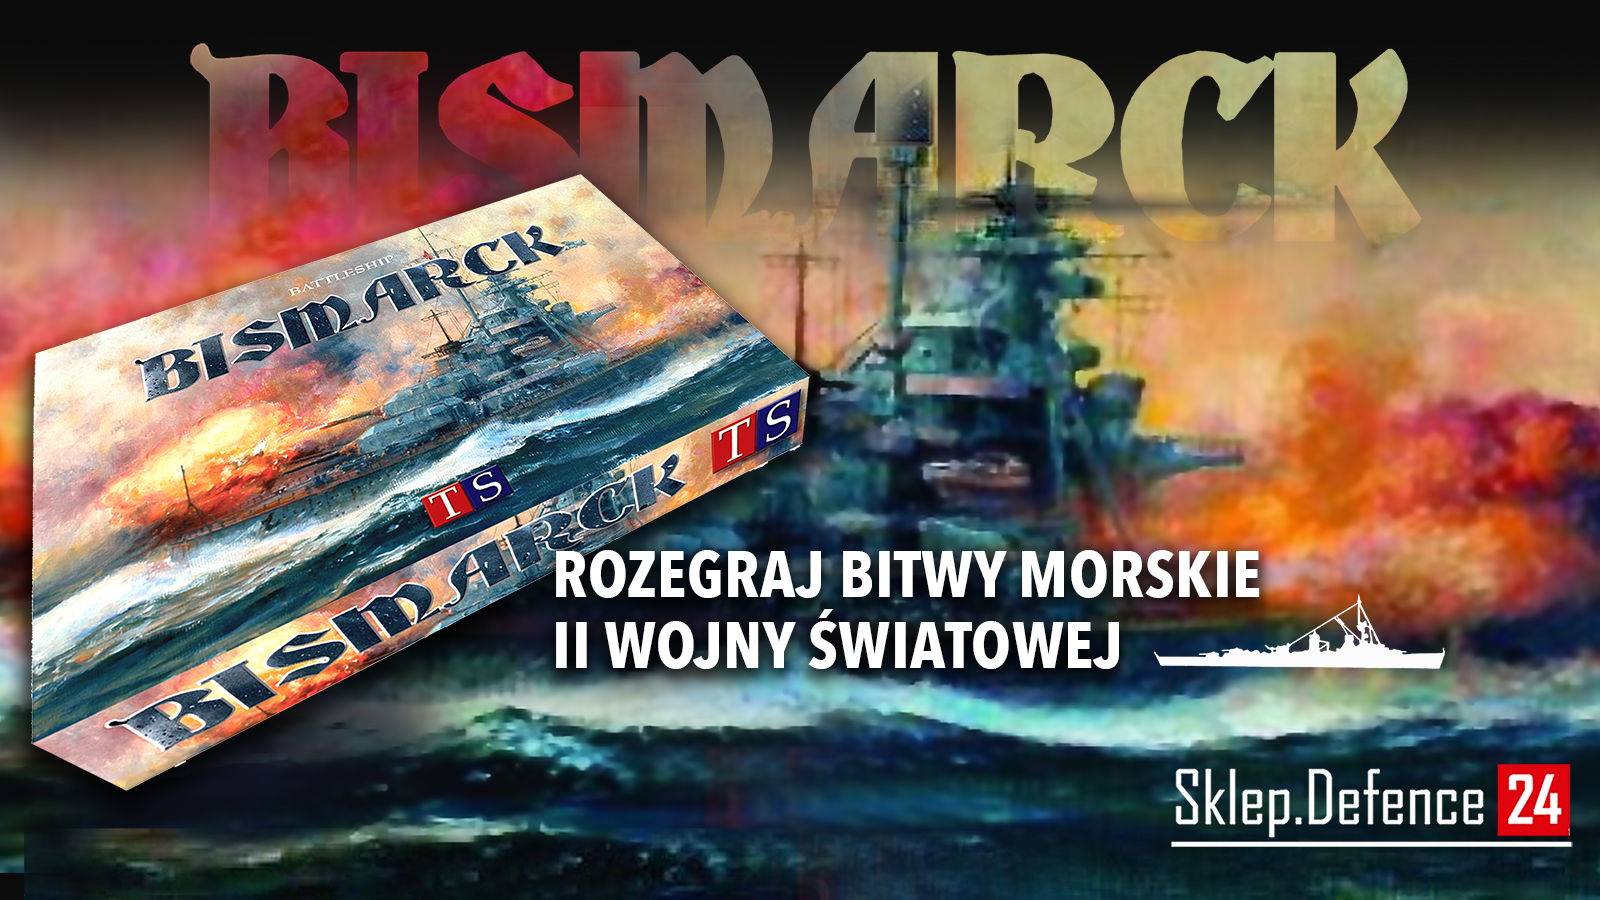 Reklama
Link: https://sklep.defence24.pl/produkt/bismarck-battleship/